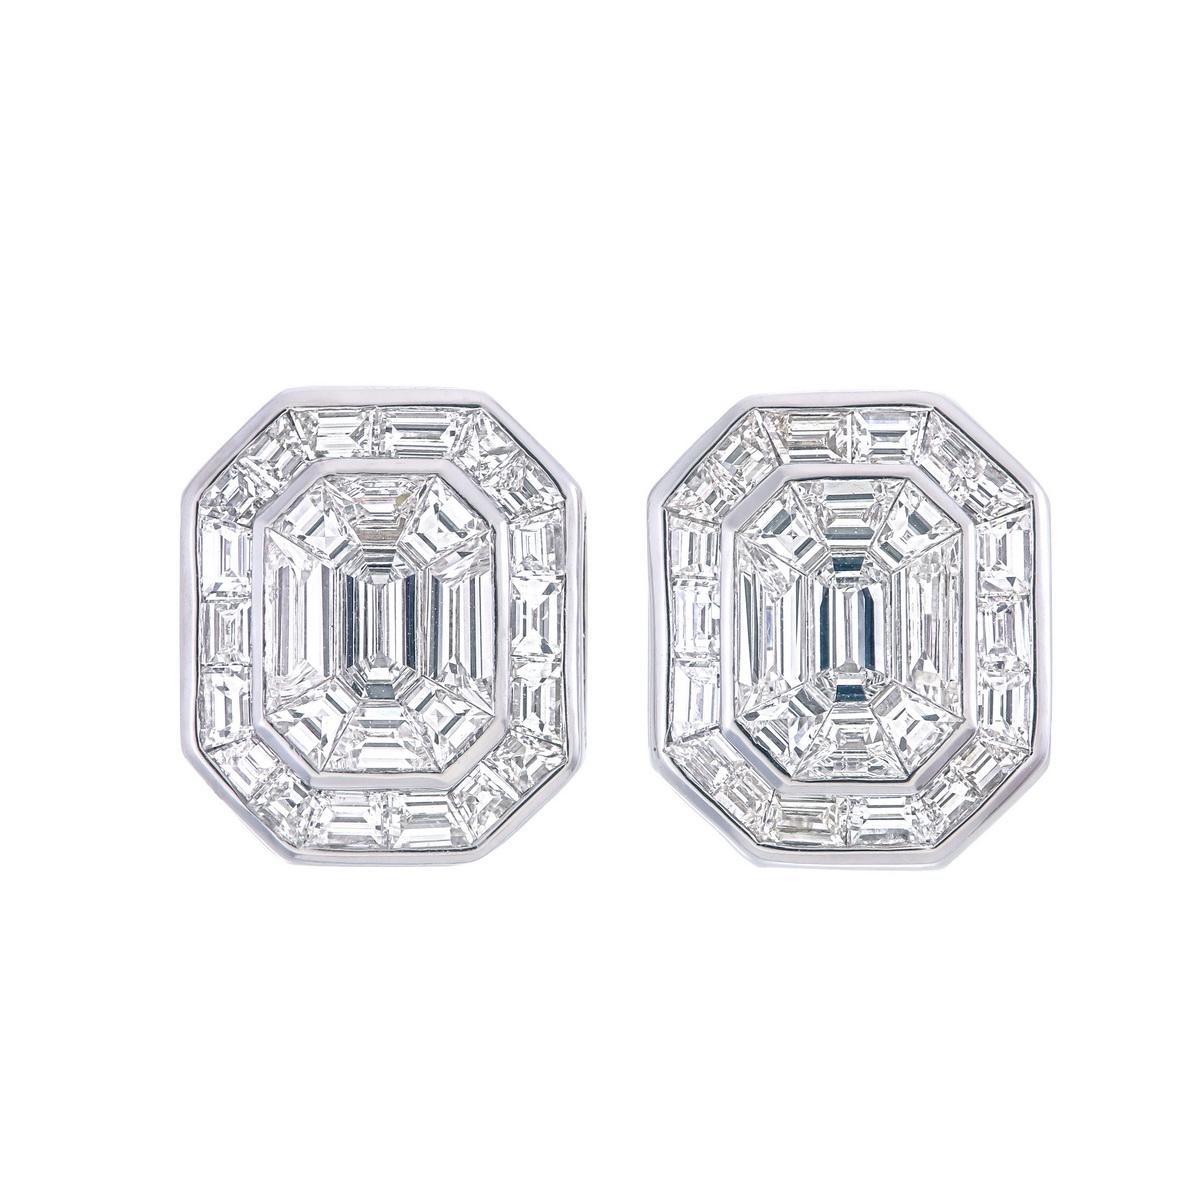 Dieses Paar Ohrringe besteht aus 1,38 Karat Diamanten in zusammengesetzter Fassung, die ein 6-karätiges Paar ergeben.
VVS Reinheit, EF Farbe Diamanten verwendet werden 
Jeder Baguette-Diamant wird neu geschliffen, um dieses schöne Aussehen zu